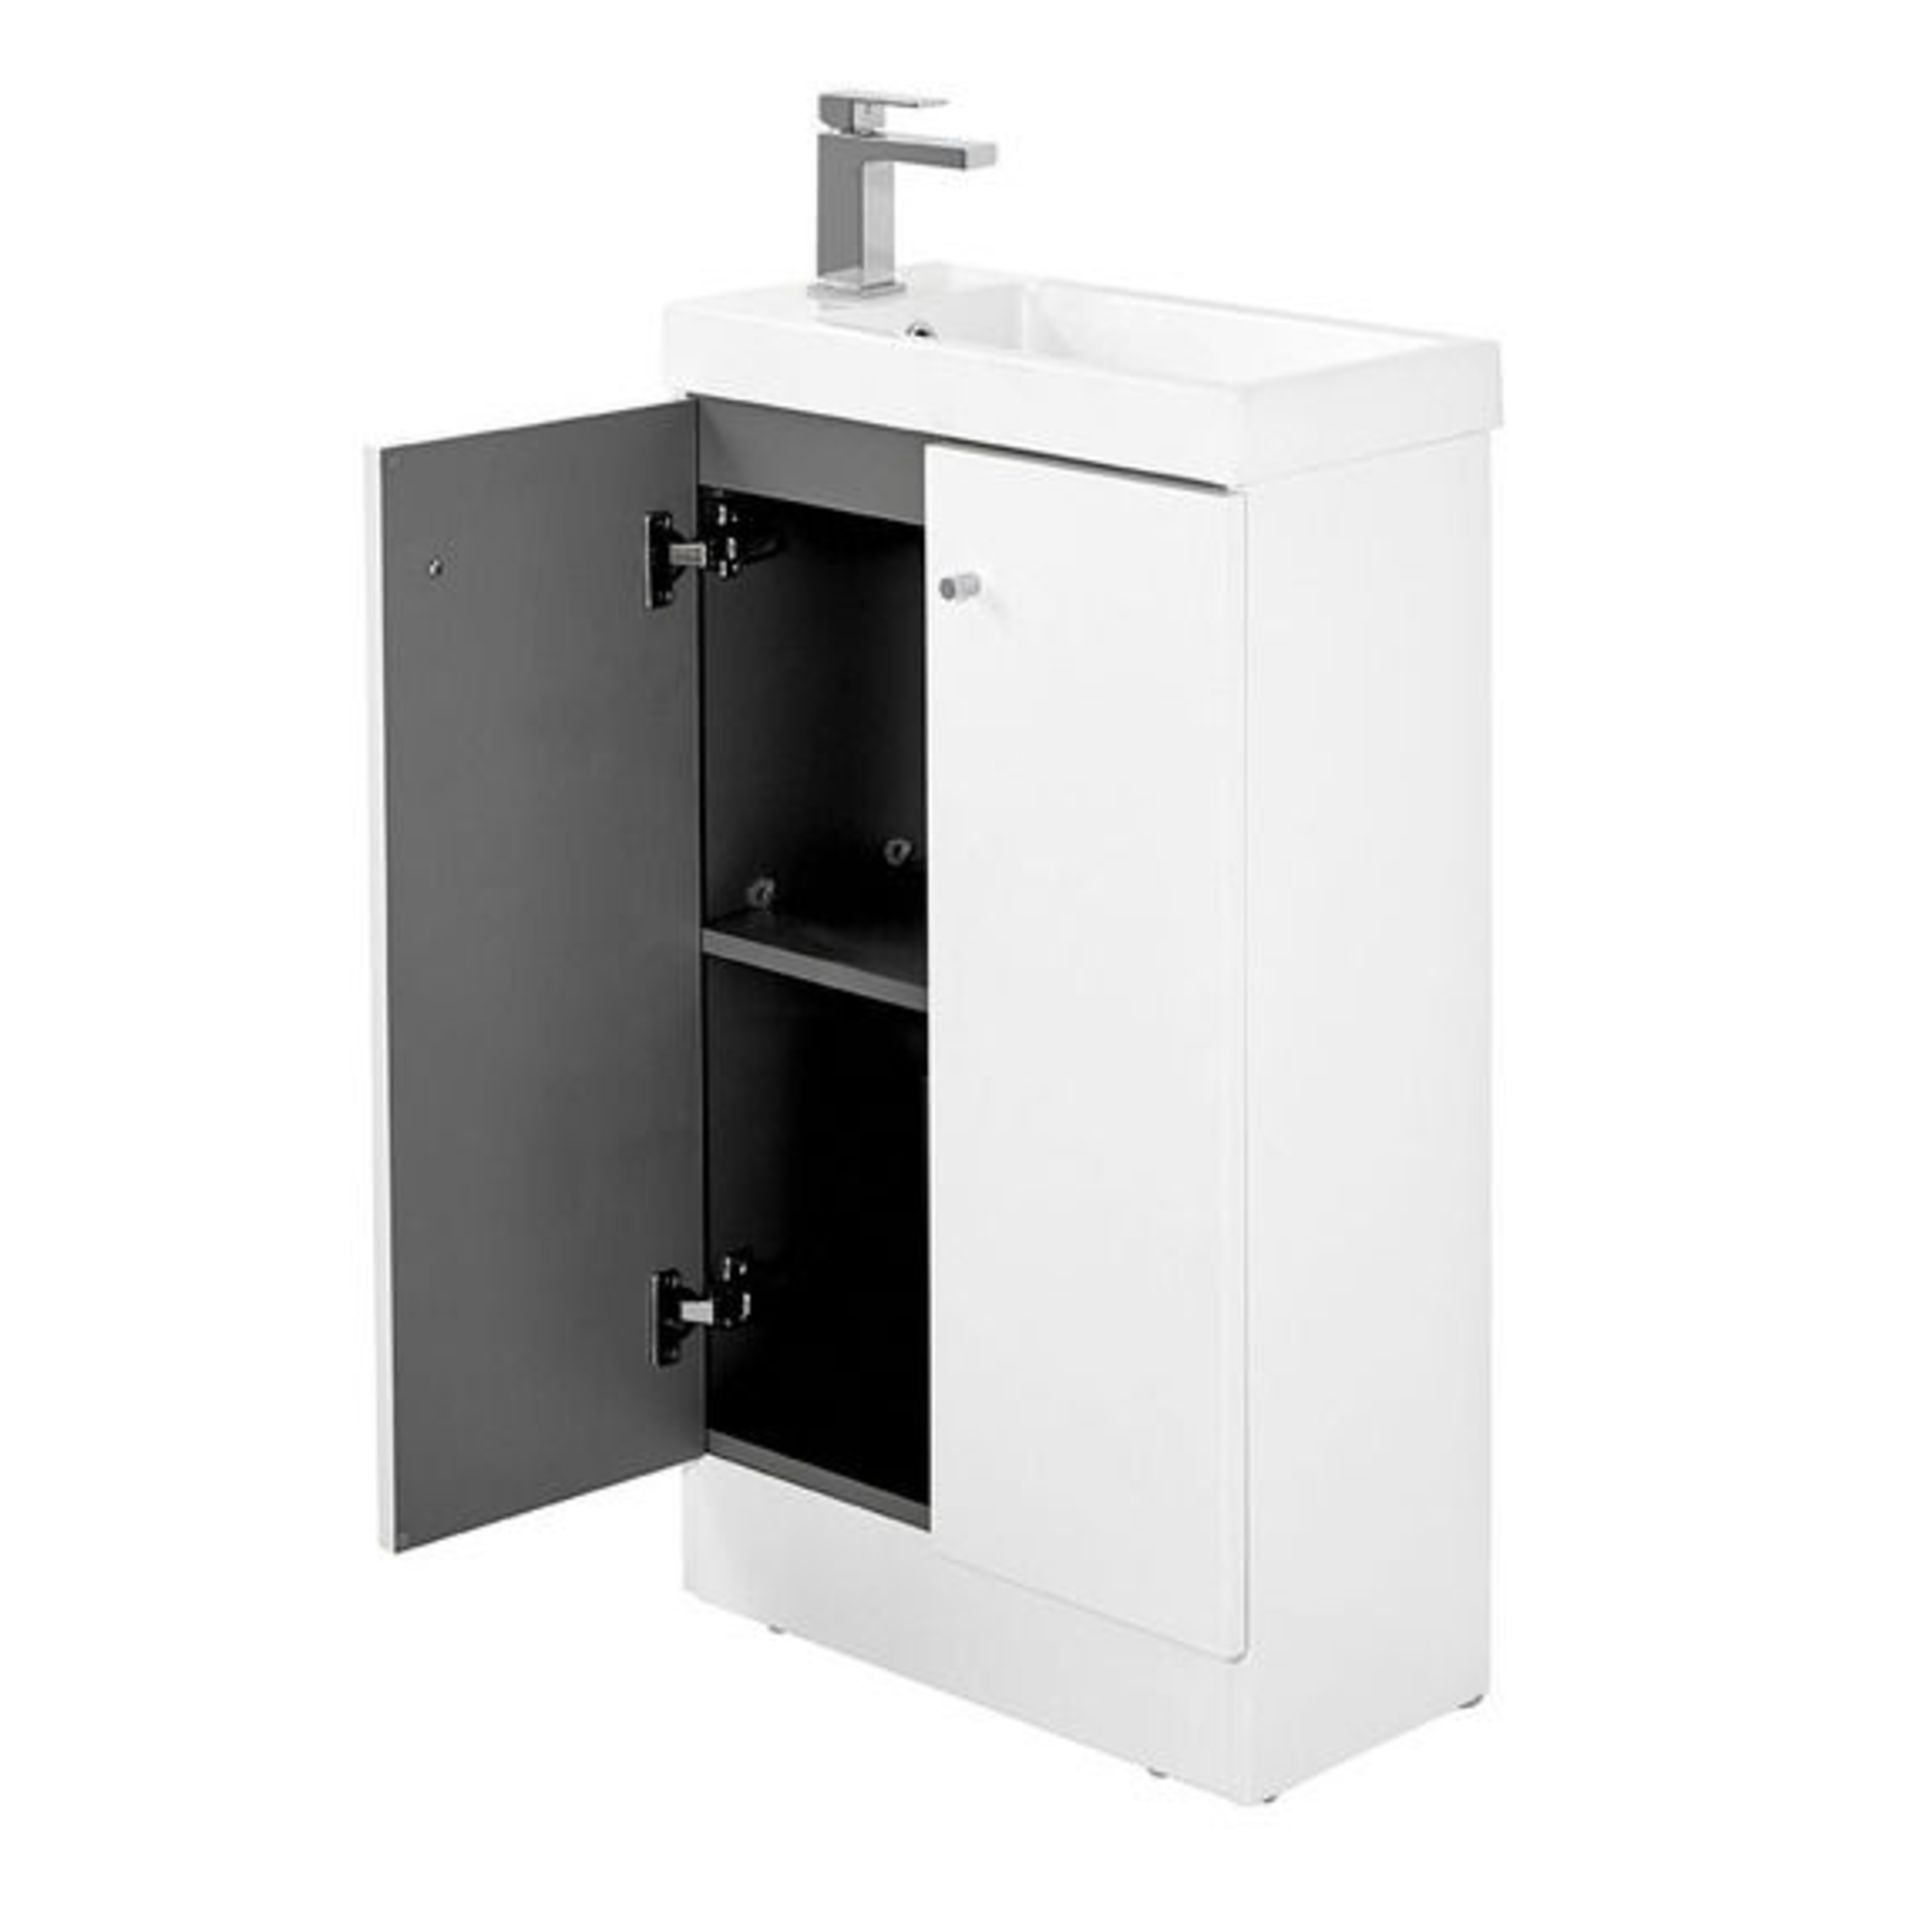 10 x Alpine Duo 495 Floorstanding Vanity Units In Gloss White - Brand New Boxed Stock -